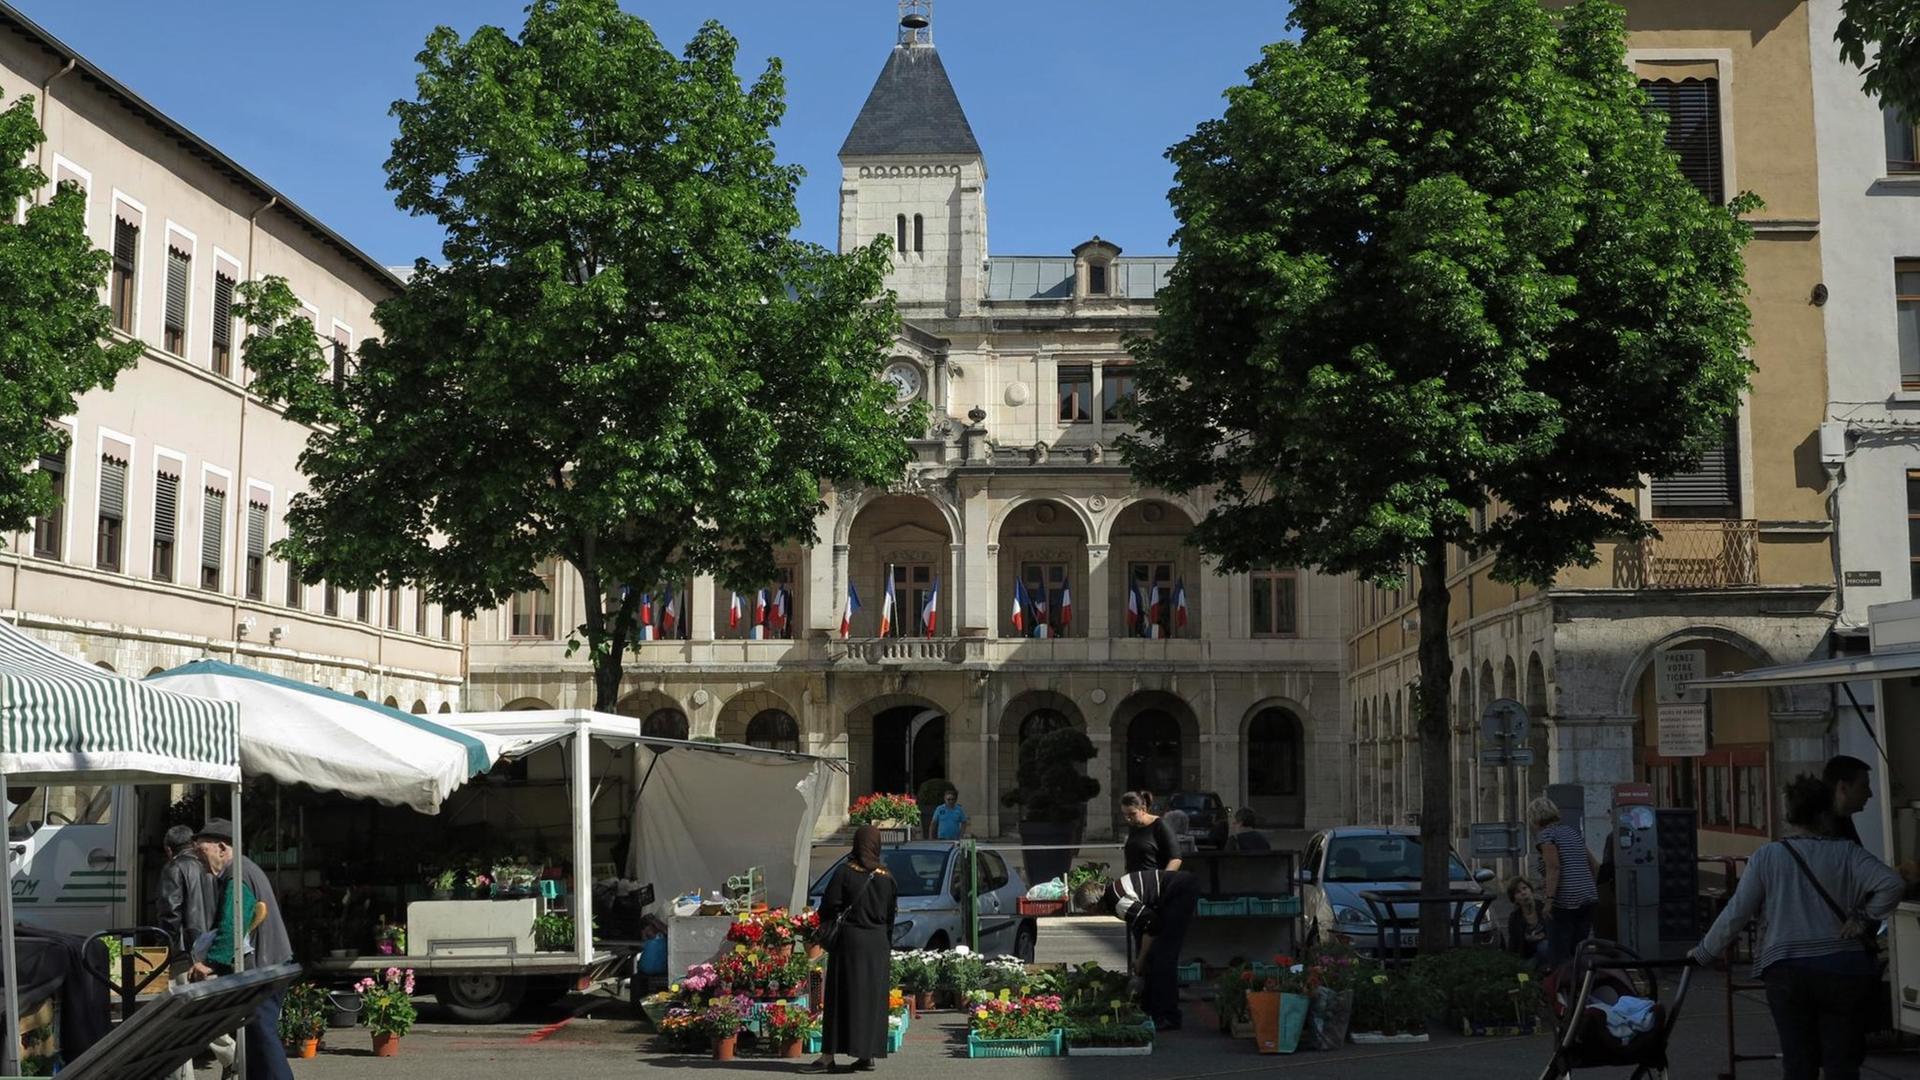 Vor dem Rathaus der Stadt Vienne an der Rhone ist ein Markt aufgebaut, aufgenommen am 10.05.2015.